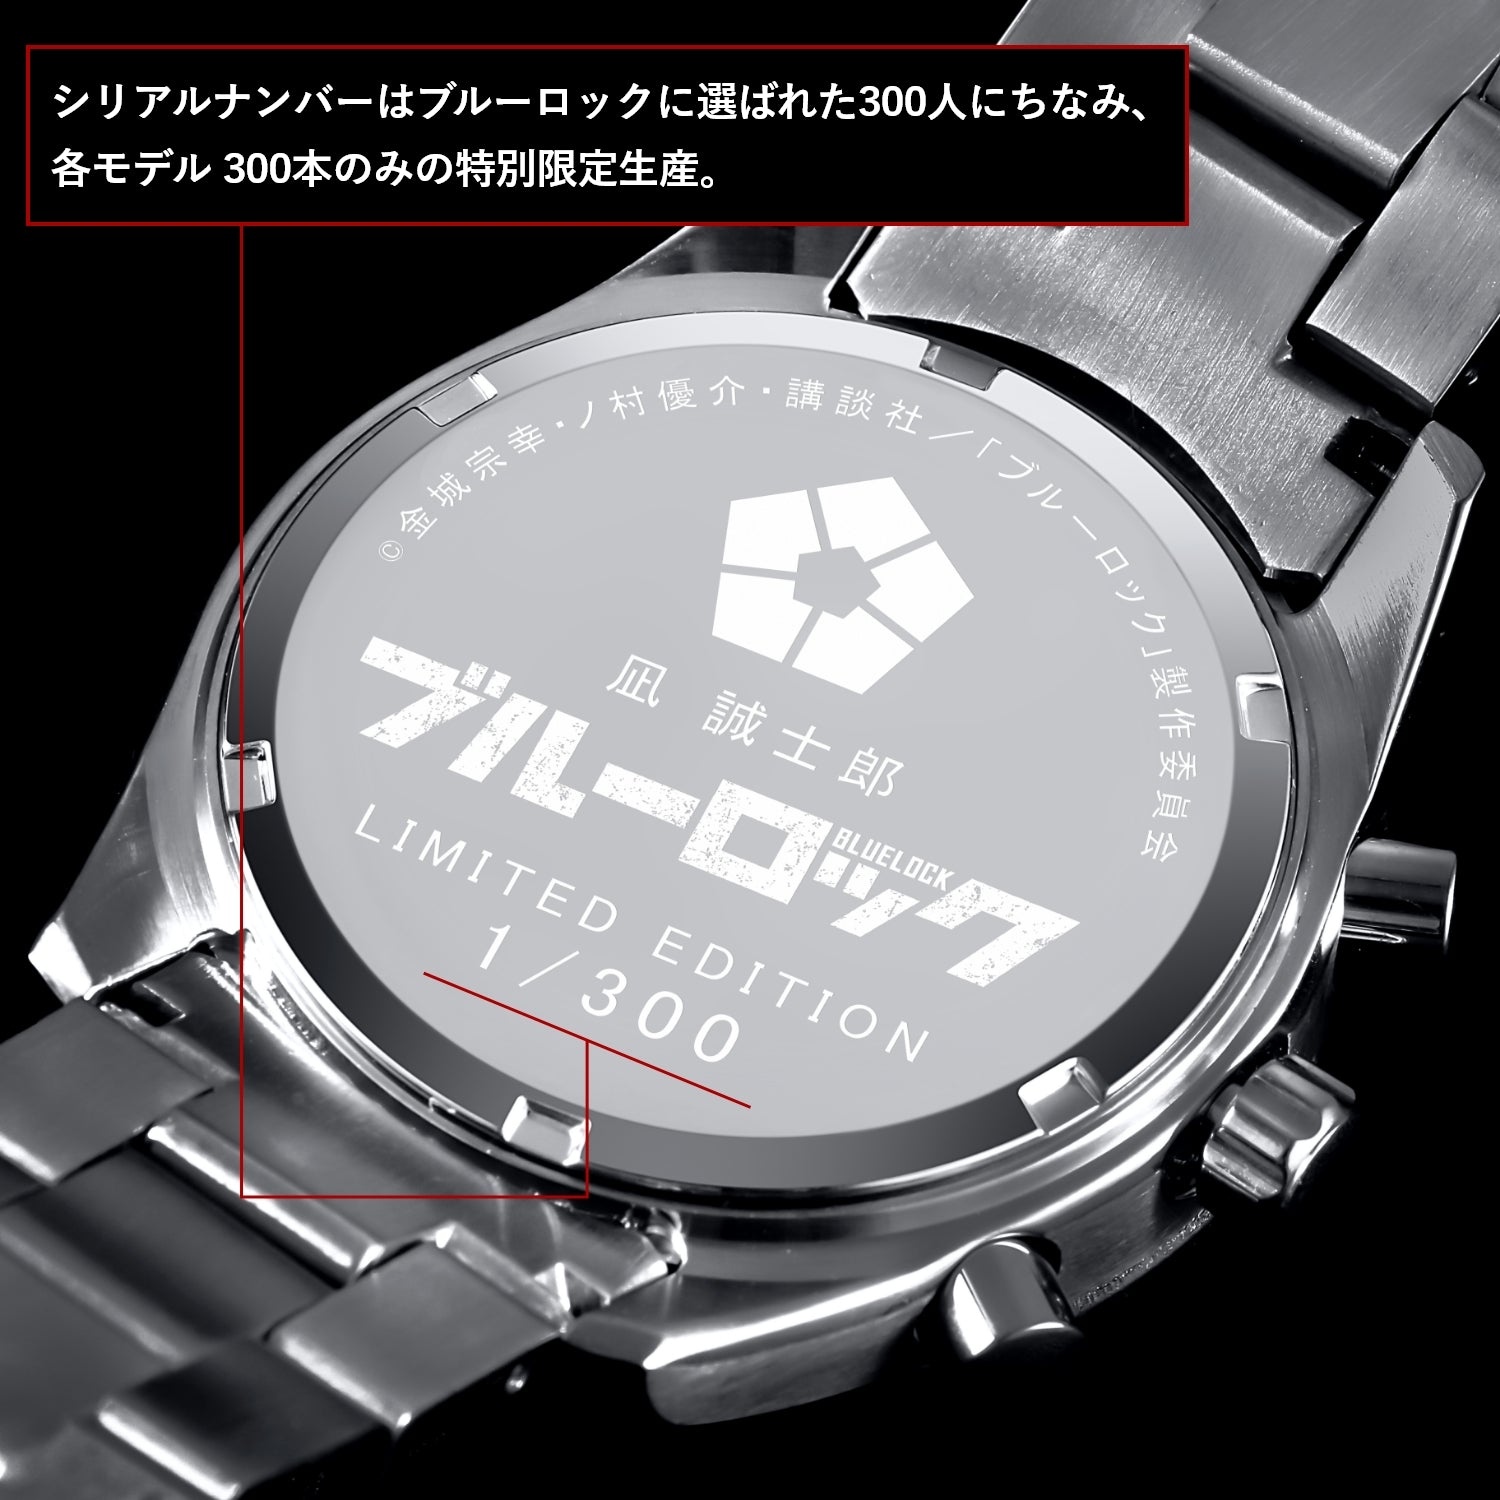 テレビアニメ「ブルーロック」オフィシャルクロノグラフ腕時計 凪 誠士郎 - 公式通販サイト「アニメコレクション/Anime Collection」